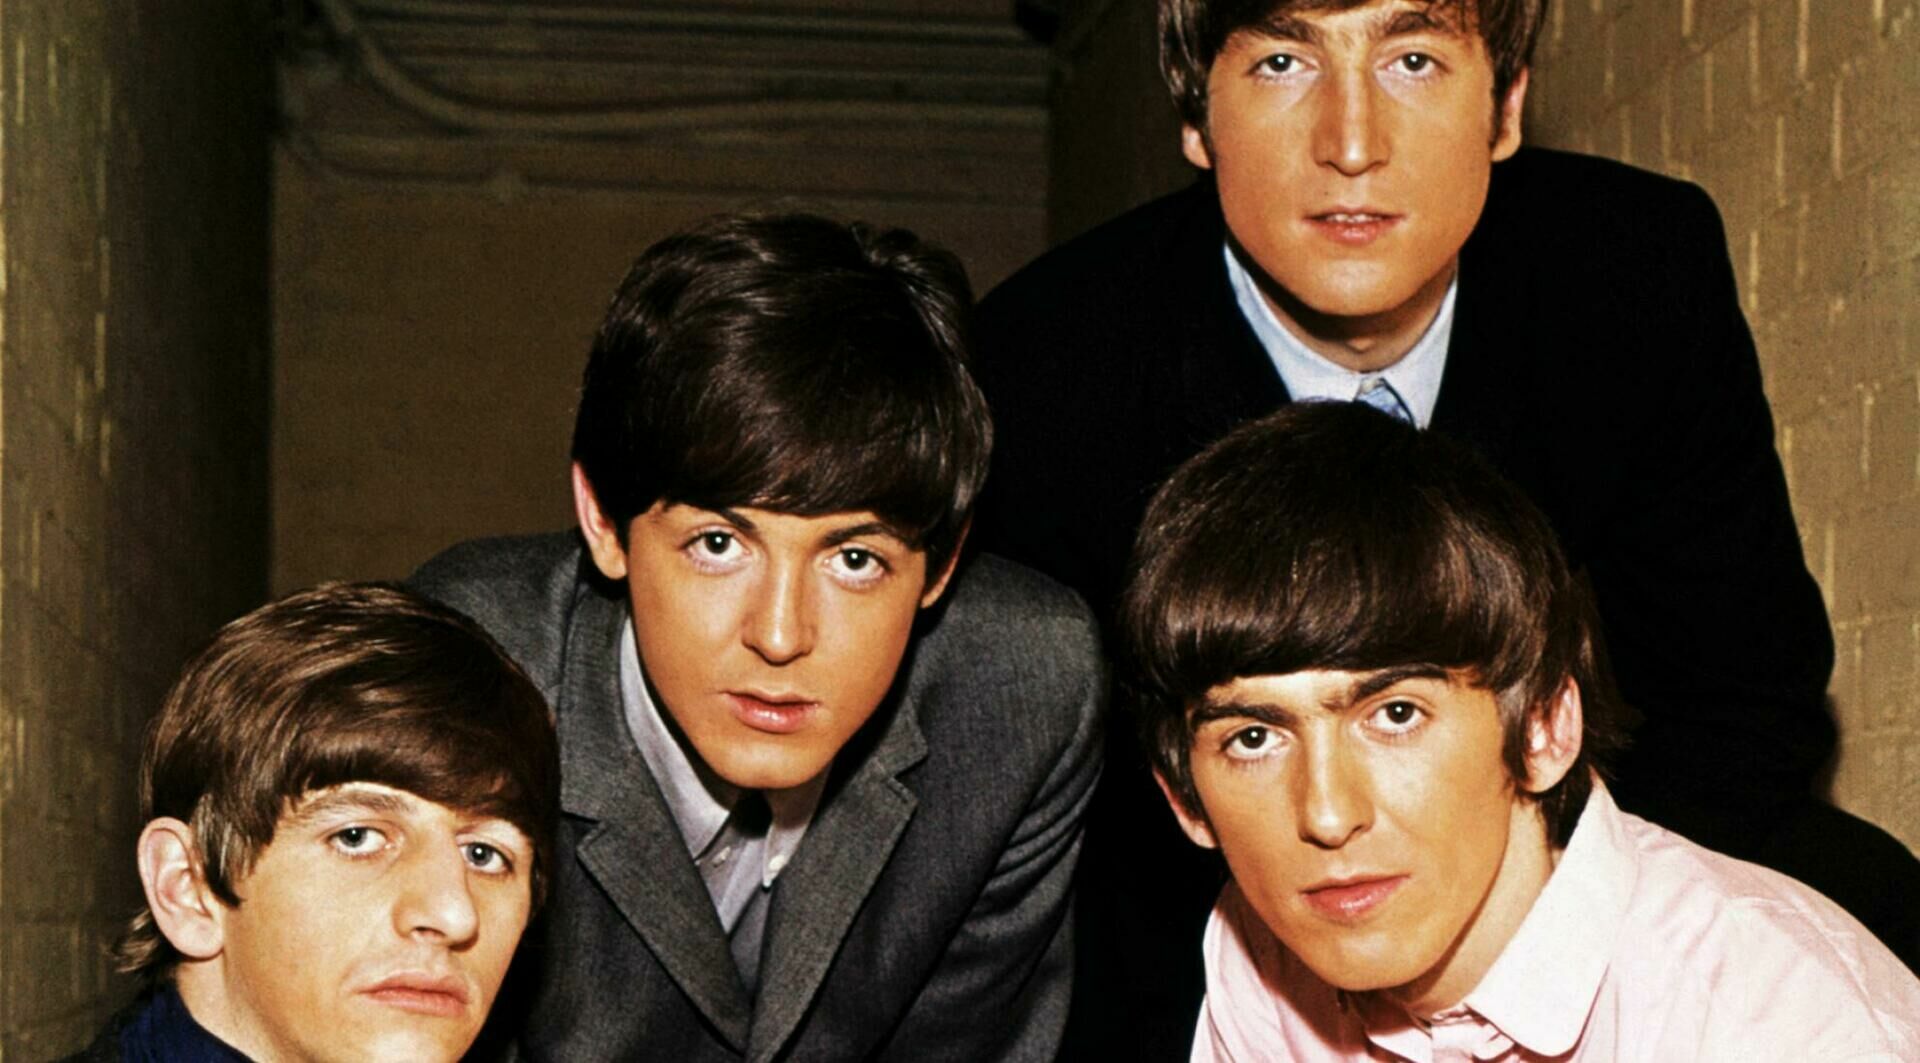 "Yesterday" группы "The Beatles" возглавила рейтинг лучших песен